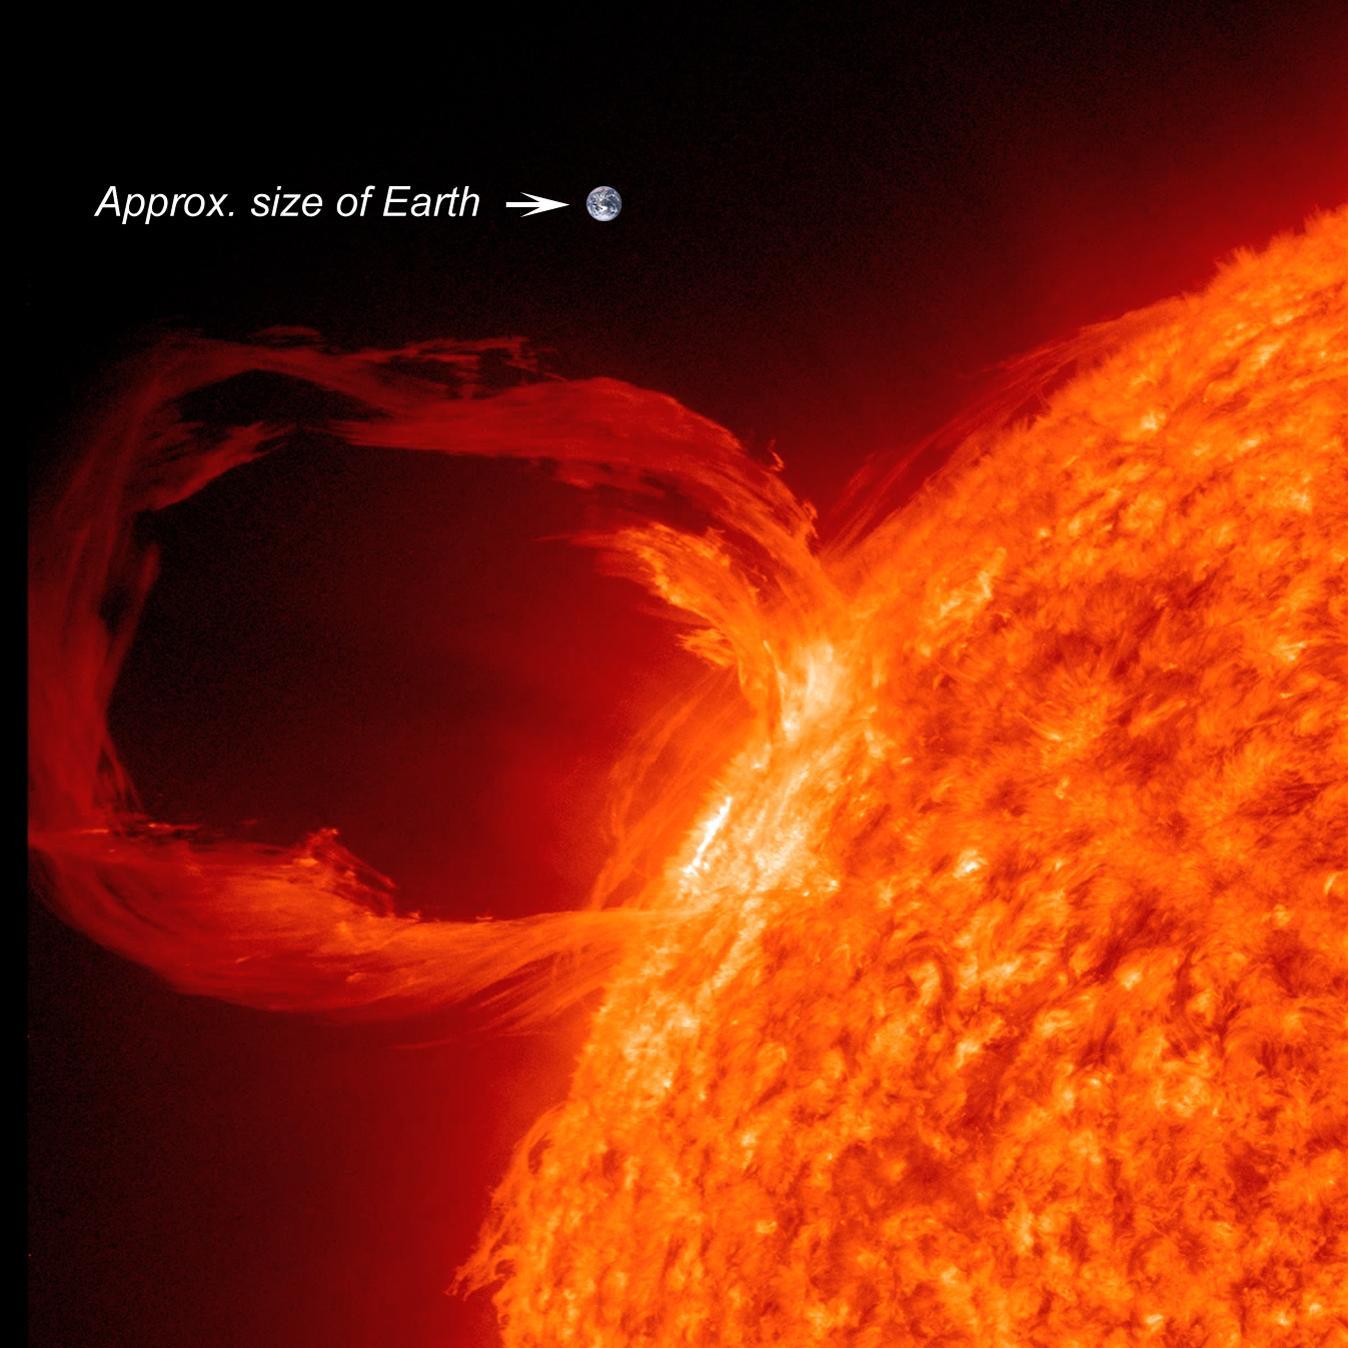 Nasze Słońce zachowuje się podobnie do VY Canis Majoris, aczkolwiek w mniejszej skali. Oto słoneczna protuberancja obserwowana w świetle ultrafioletowym w dn. 30 marca 2010 roku. Dla porównania pokazano w tej samej skali wielkość Ziemi. Źródło: NASA/ SDO